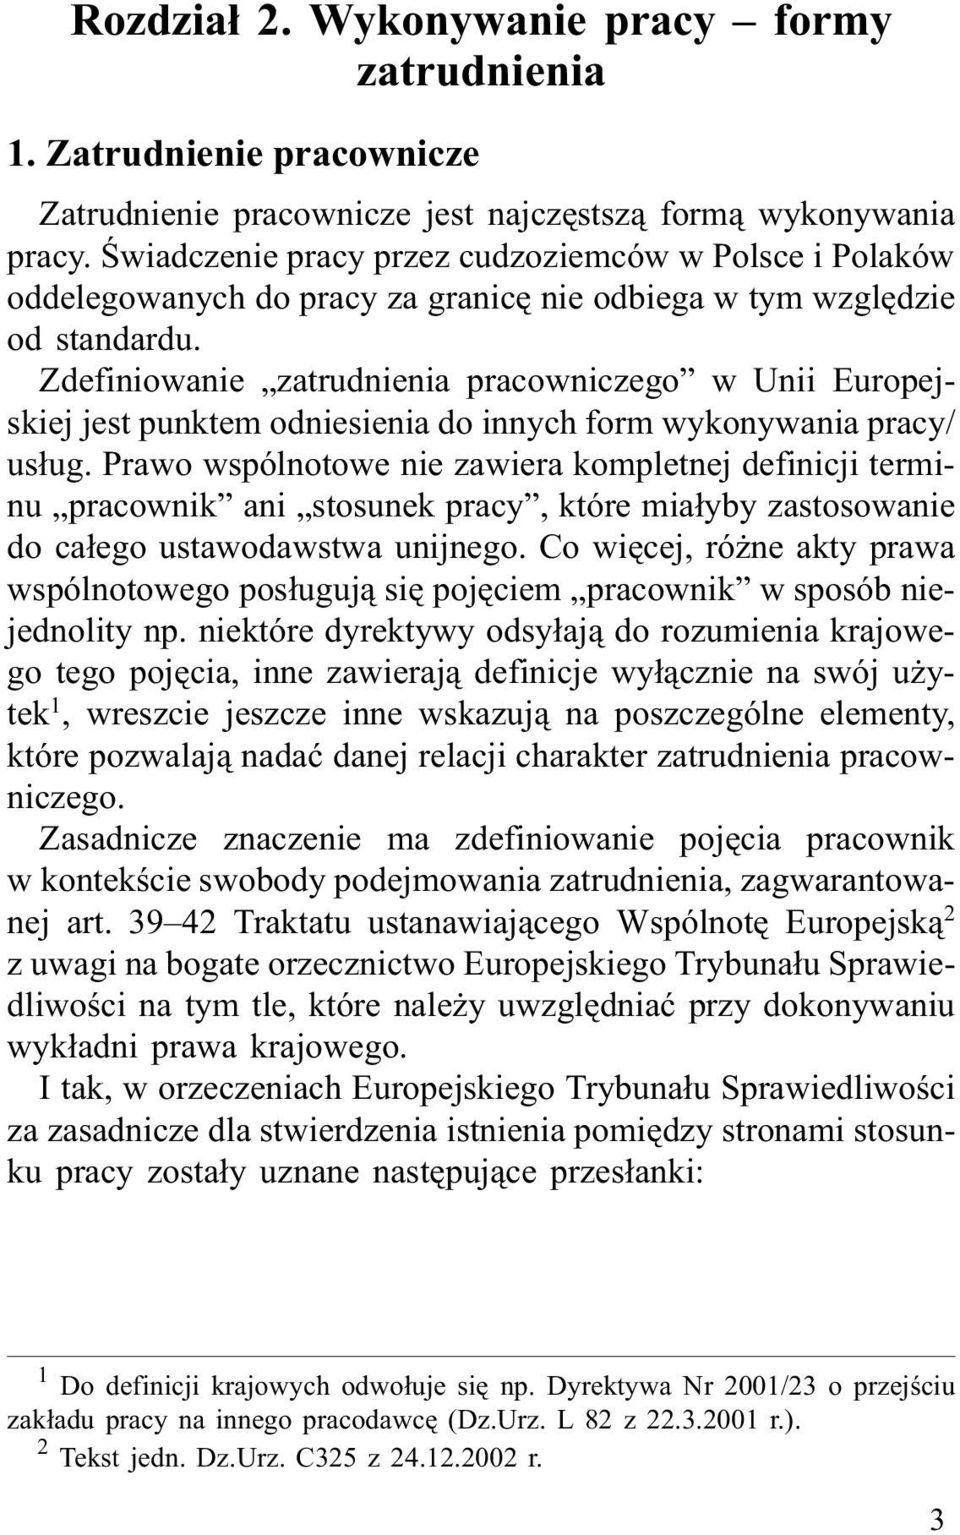 Œwiadczenie pracy przez cudzoziemców w Polsce i Polaków oddelegowanych do pracy za granicê nie odbiega w tym wzglêdzie od standardu.